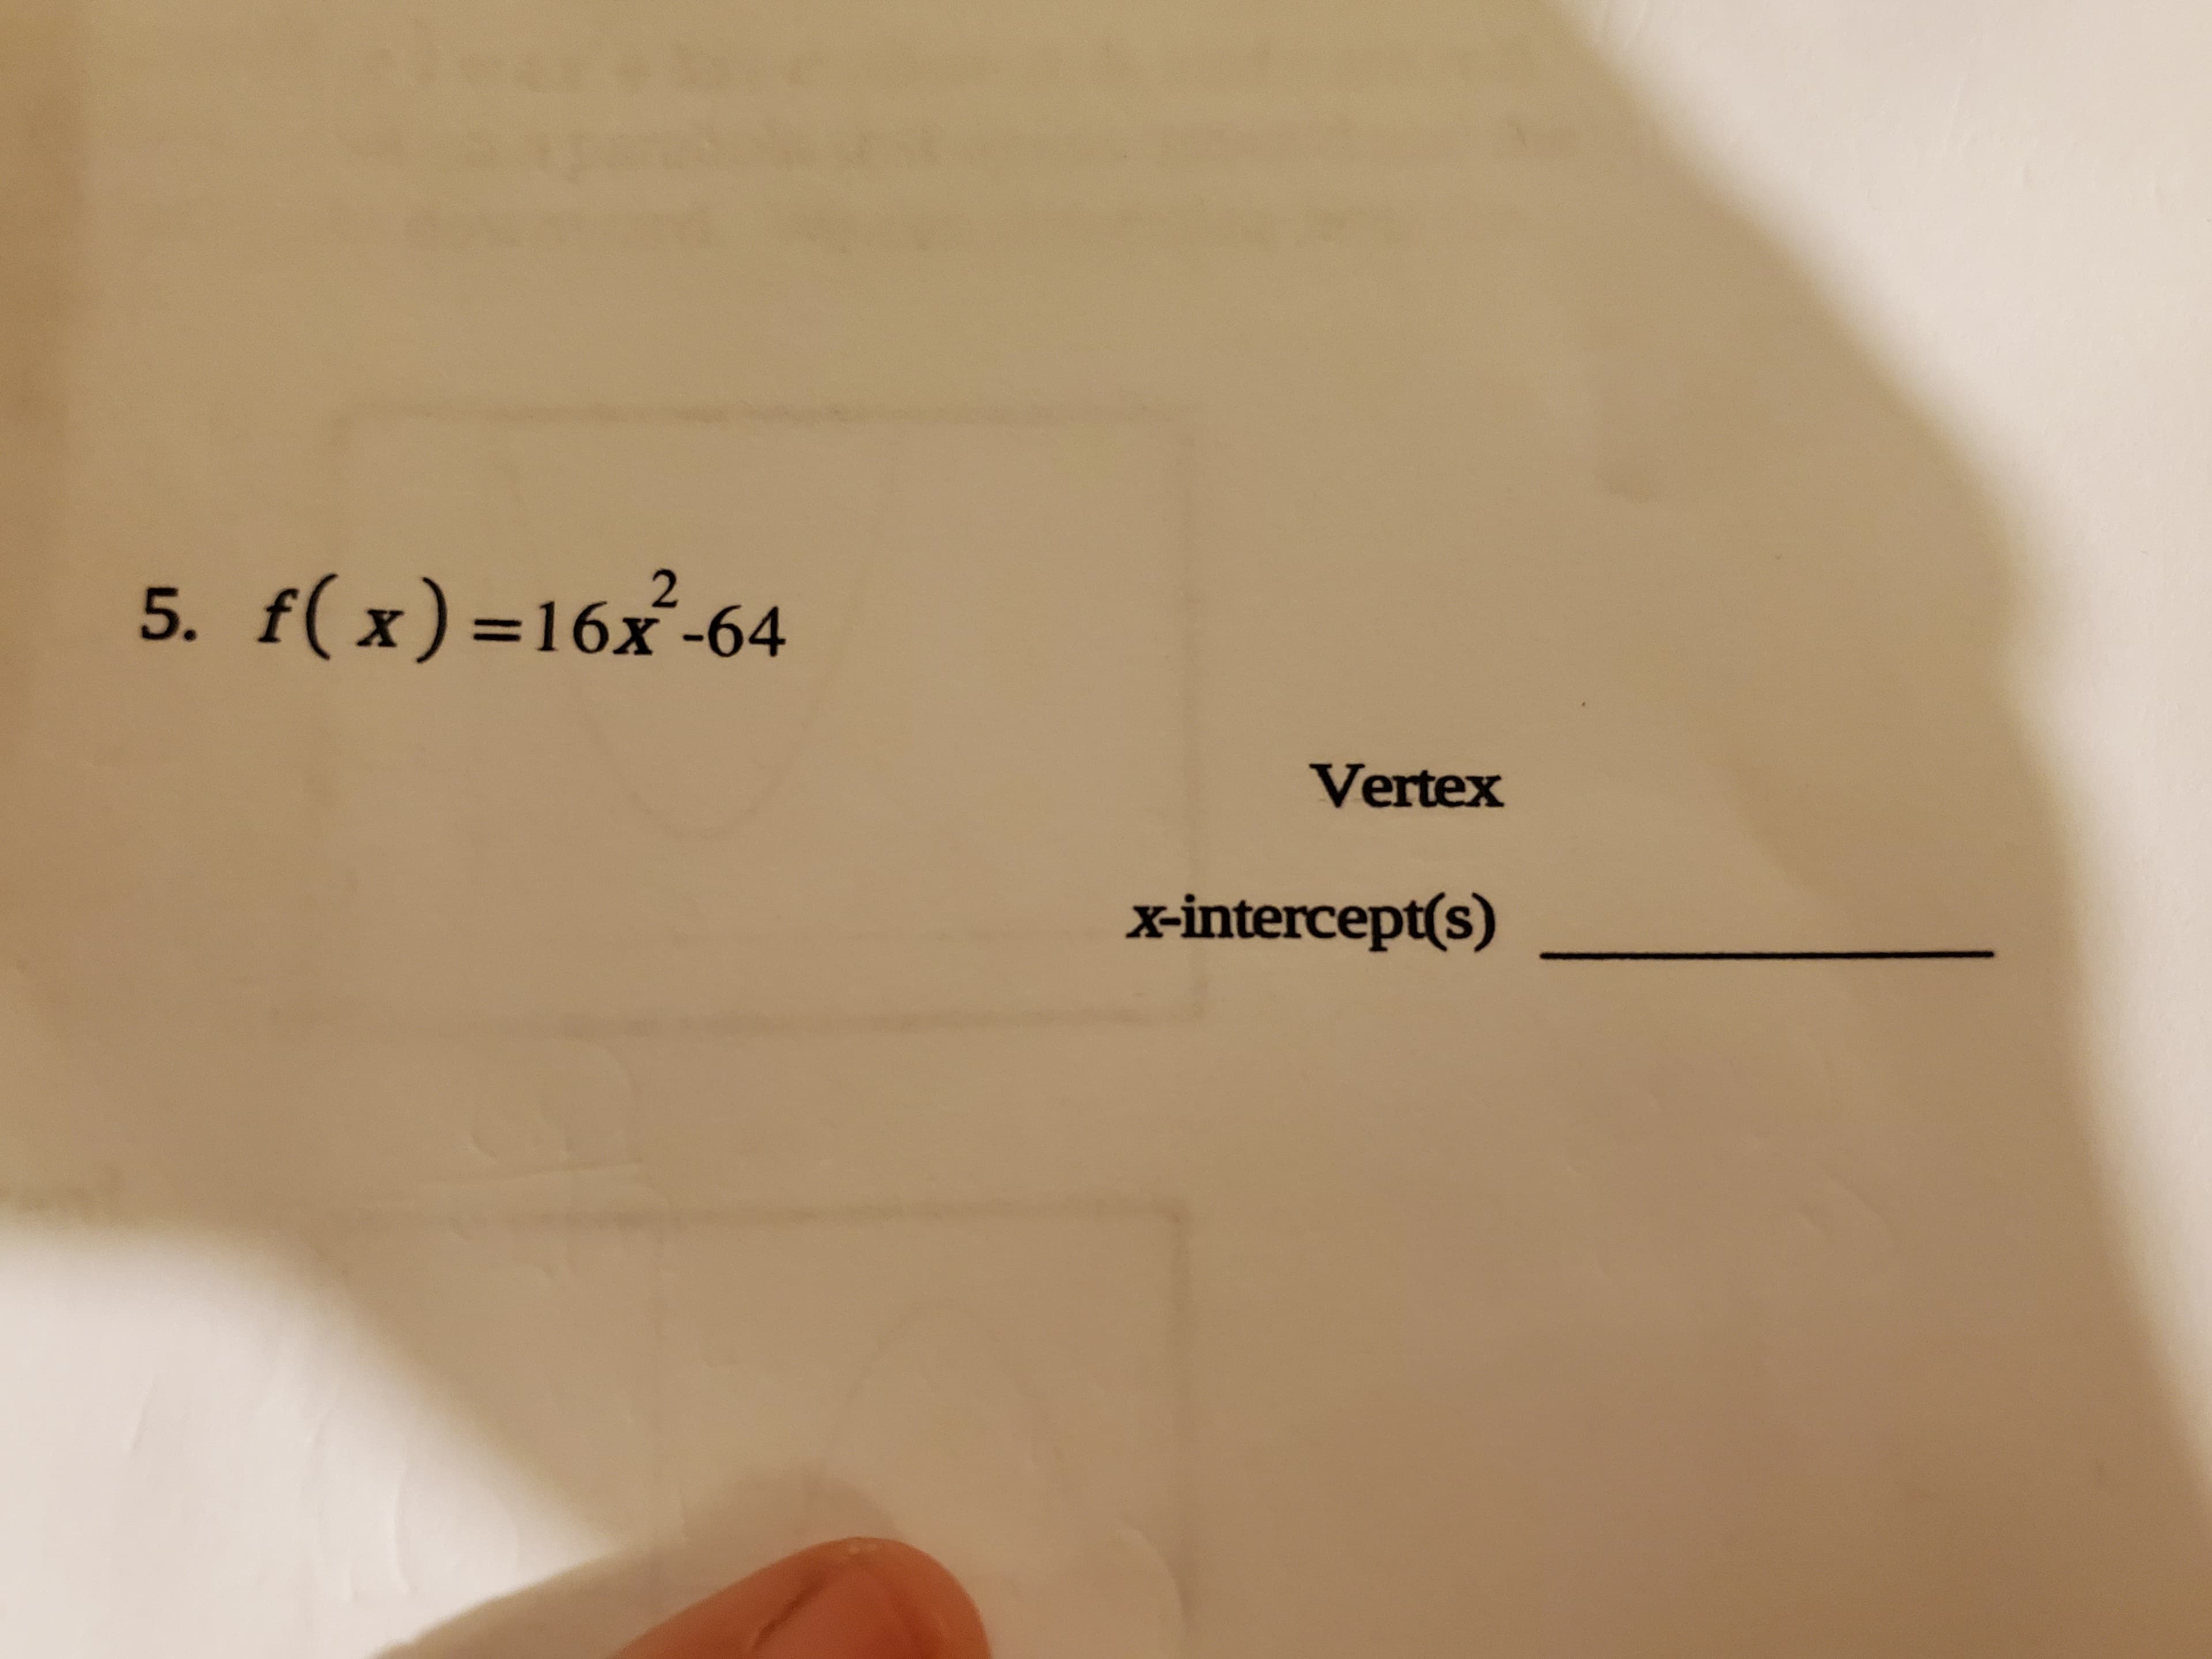 5. f(x)=16x-64
Vertex
x-intercept(s)
